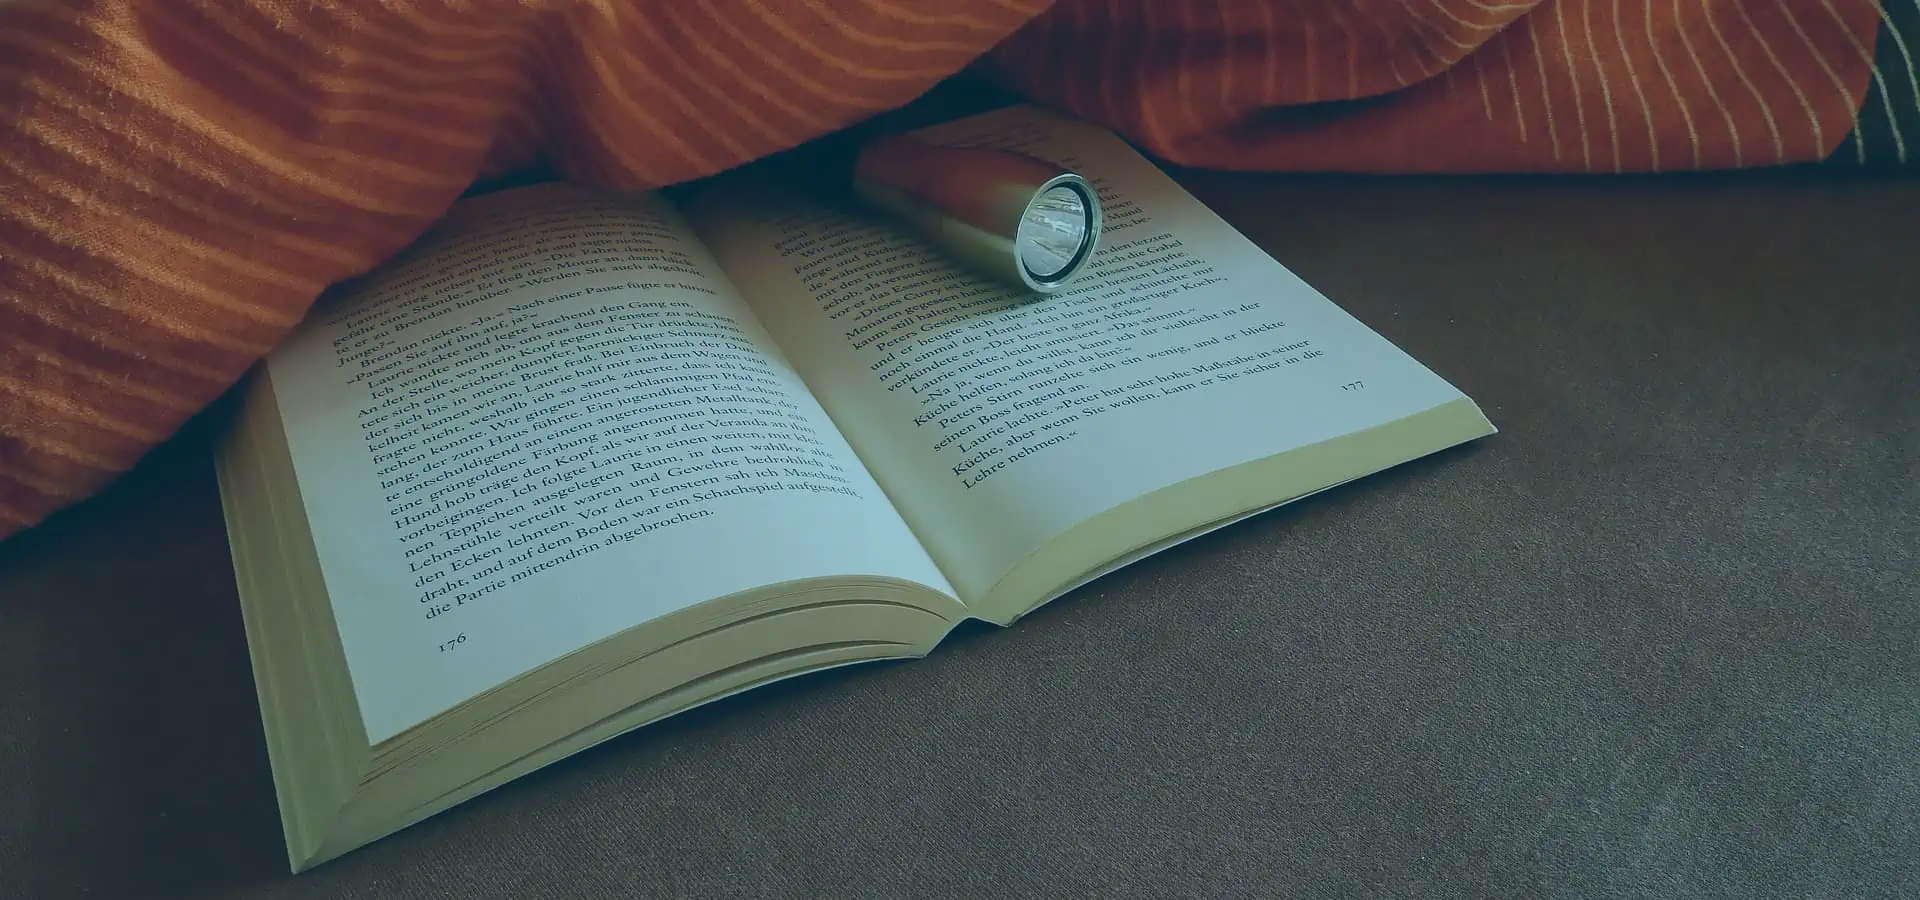 Comment lire au lit confortablement et sans s'endormir